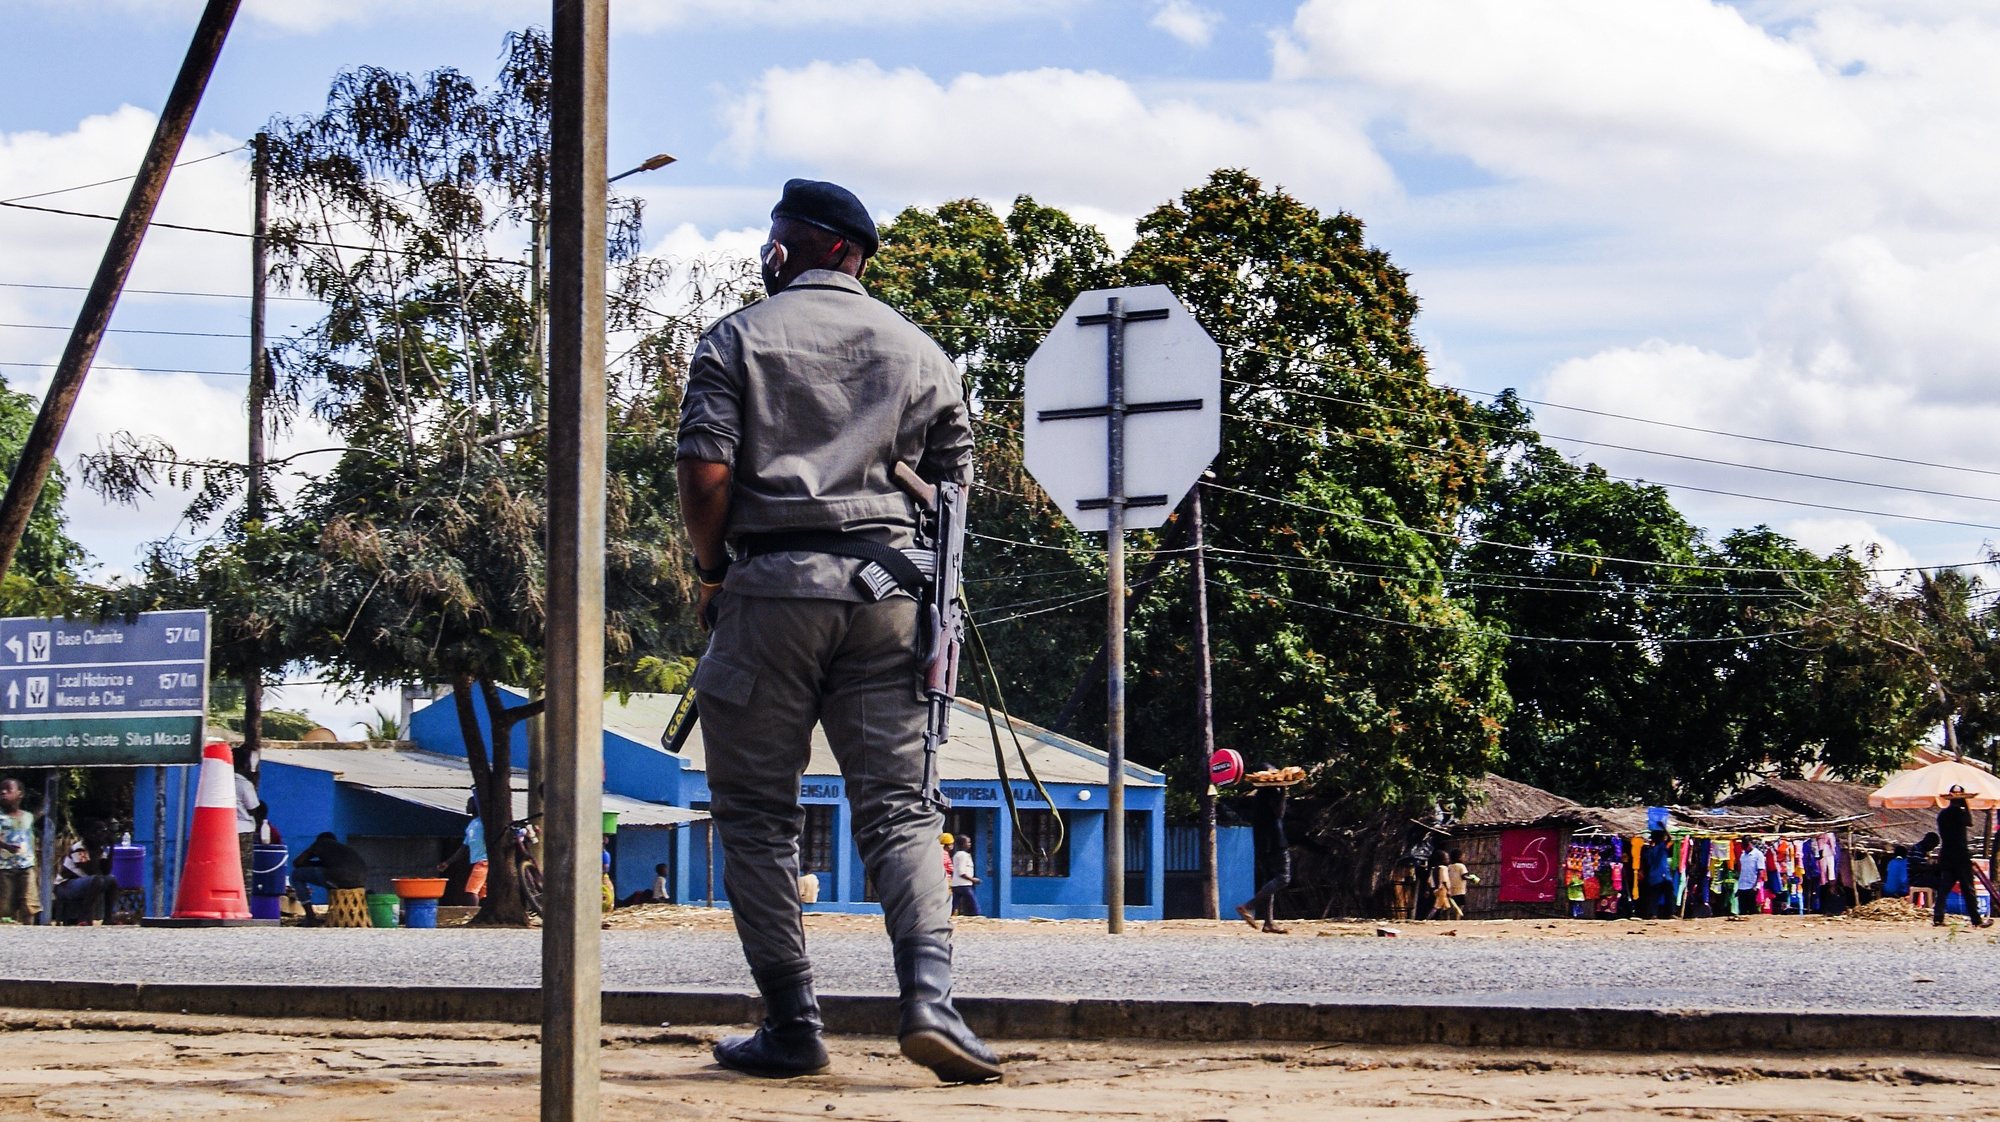 Posto de controlo policial Silva Macua, na Estrada Nacional Número 380, à entrada dos distritos de Quissanga e Macomia, Cabo Delgado, Moçambique, 21 de agosto de 2021. As vilas e aldeias devastadas por rebeldes nos distritos de Quissanga e Macomia têm as marcas do terror estampadas em cada esquina e, entre ruínas, ensaia-se a reconstrução, mas o trauma é grande e paira ainda o medo entre as comunidades (ACOMPANHA TEXTO DO DIA 23 DE AGOSTO DE 2021). LUÍSA NHANTUMBO/LUSA